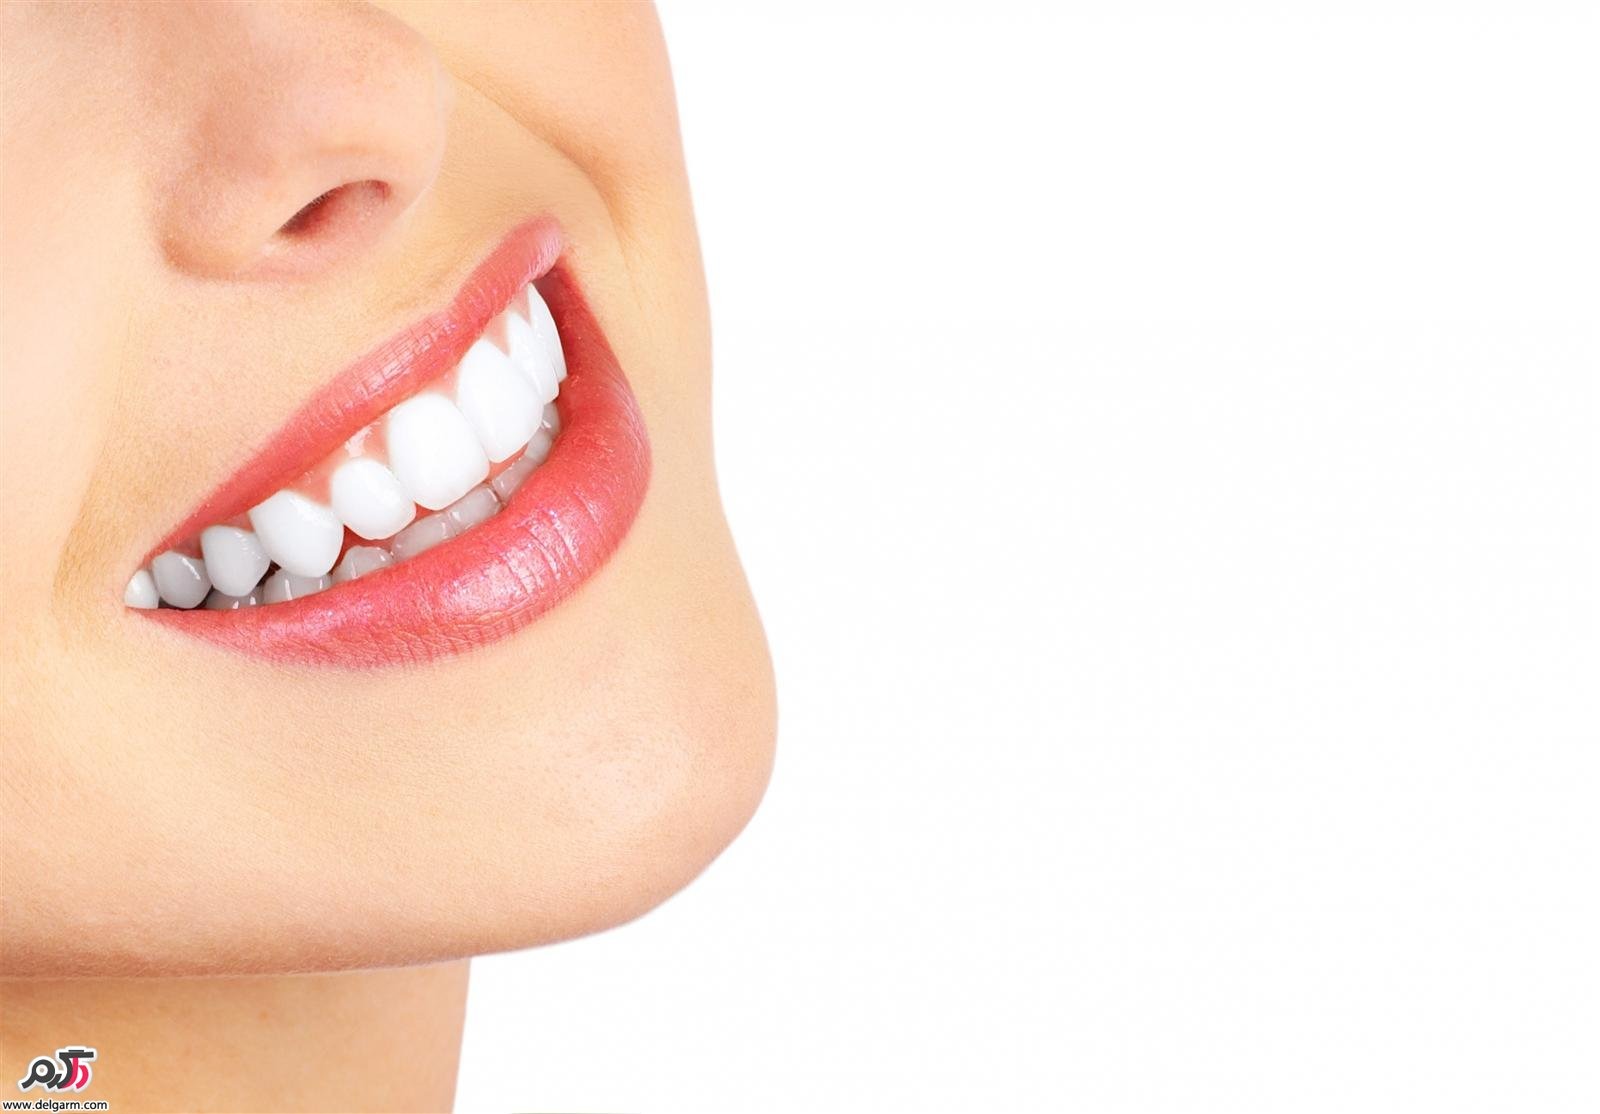  چگونه دندان هایی سالم و محکم داشته باشیم